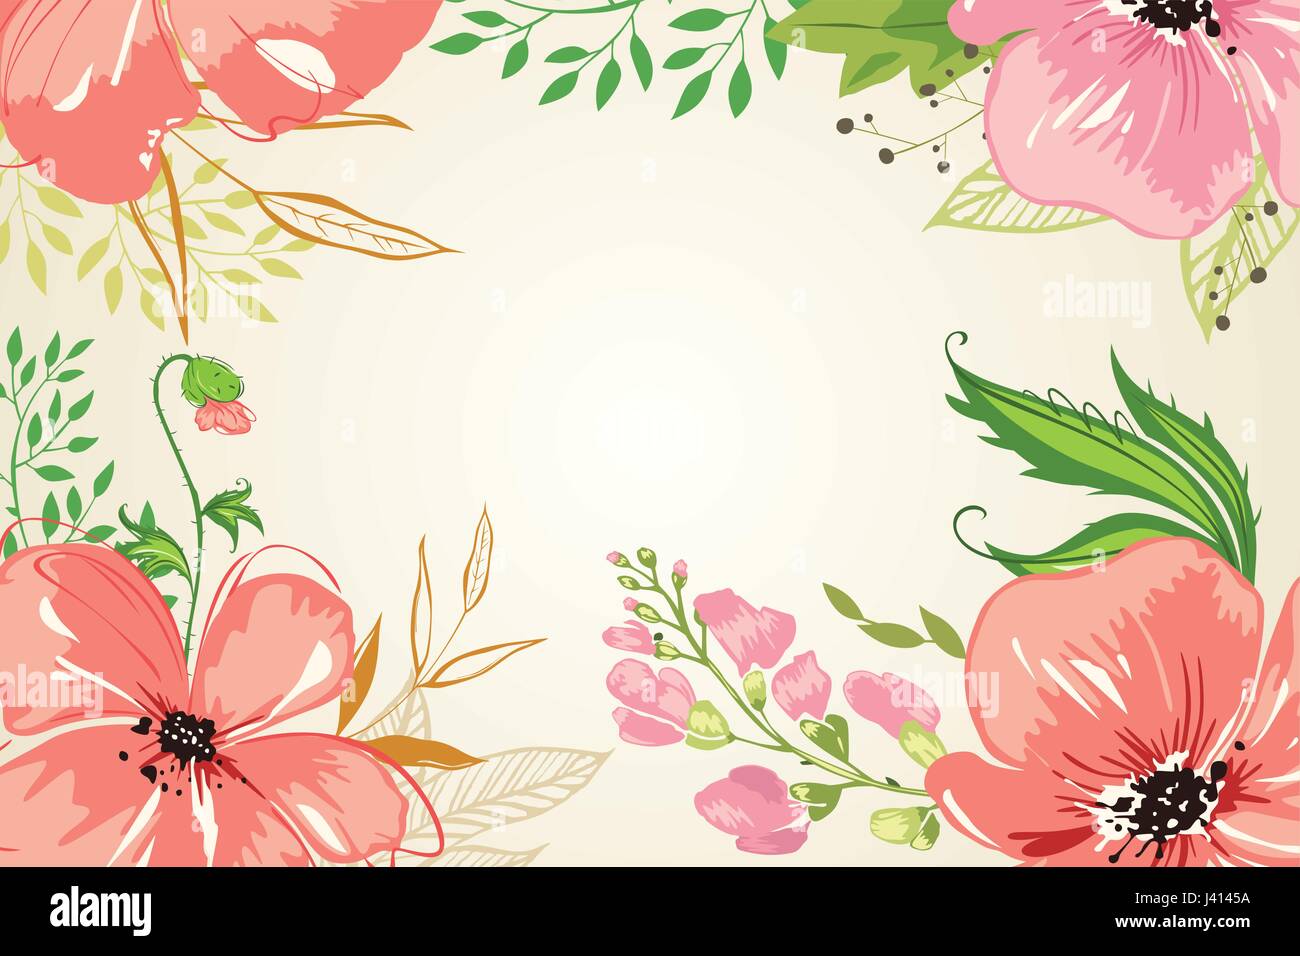 Eine Vektor-Illustration von rosa Blumen Hintergrund Stock Vektor